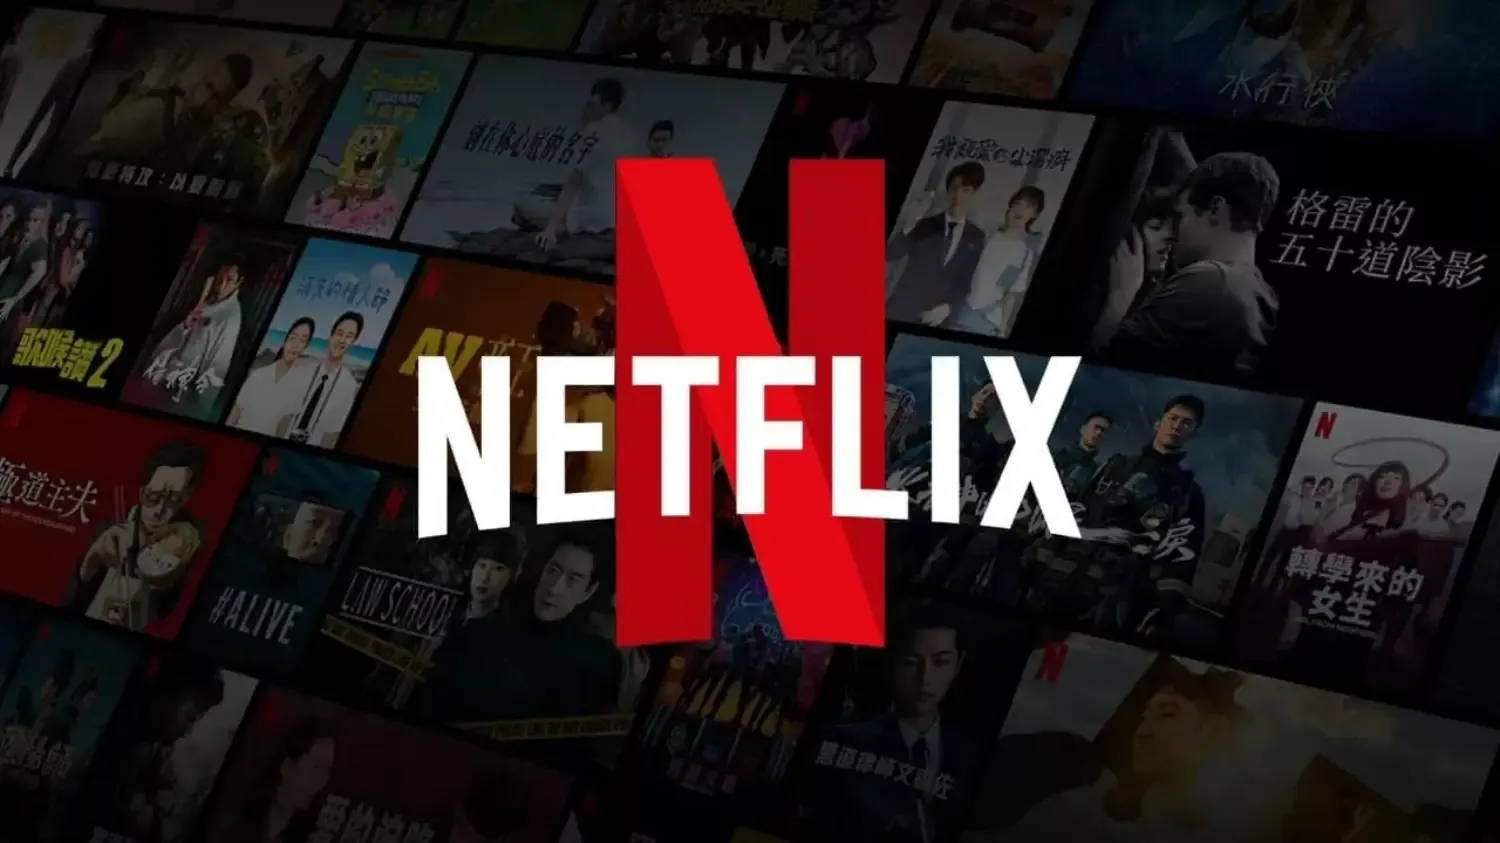 Netflix'e Zam Yine Kapıda! Fiyatlar Artabilir